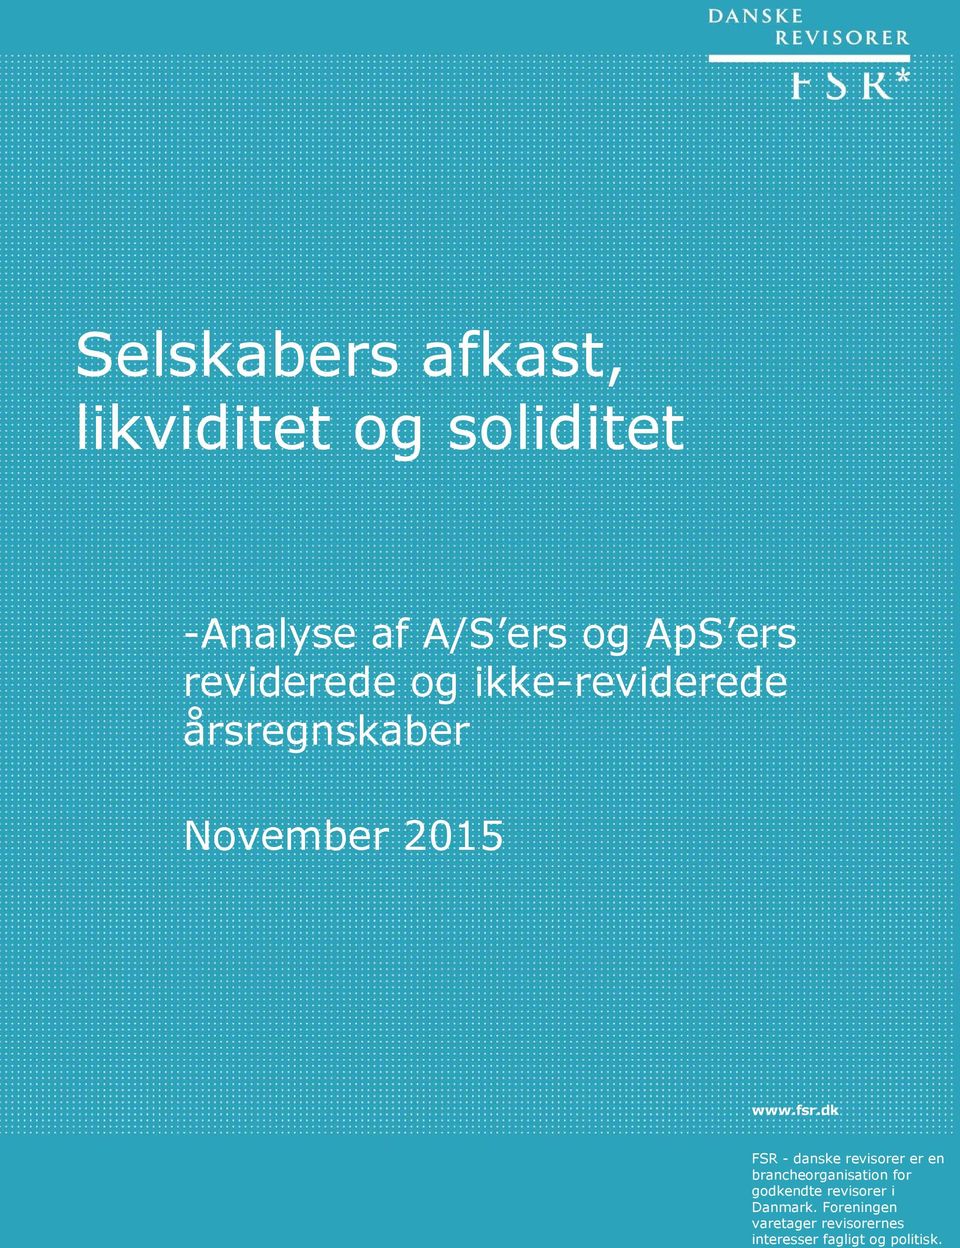 dk FSR - danske revisorer er en brancheorganisation for godkendte